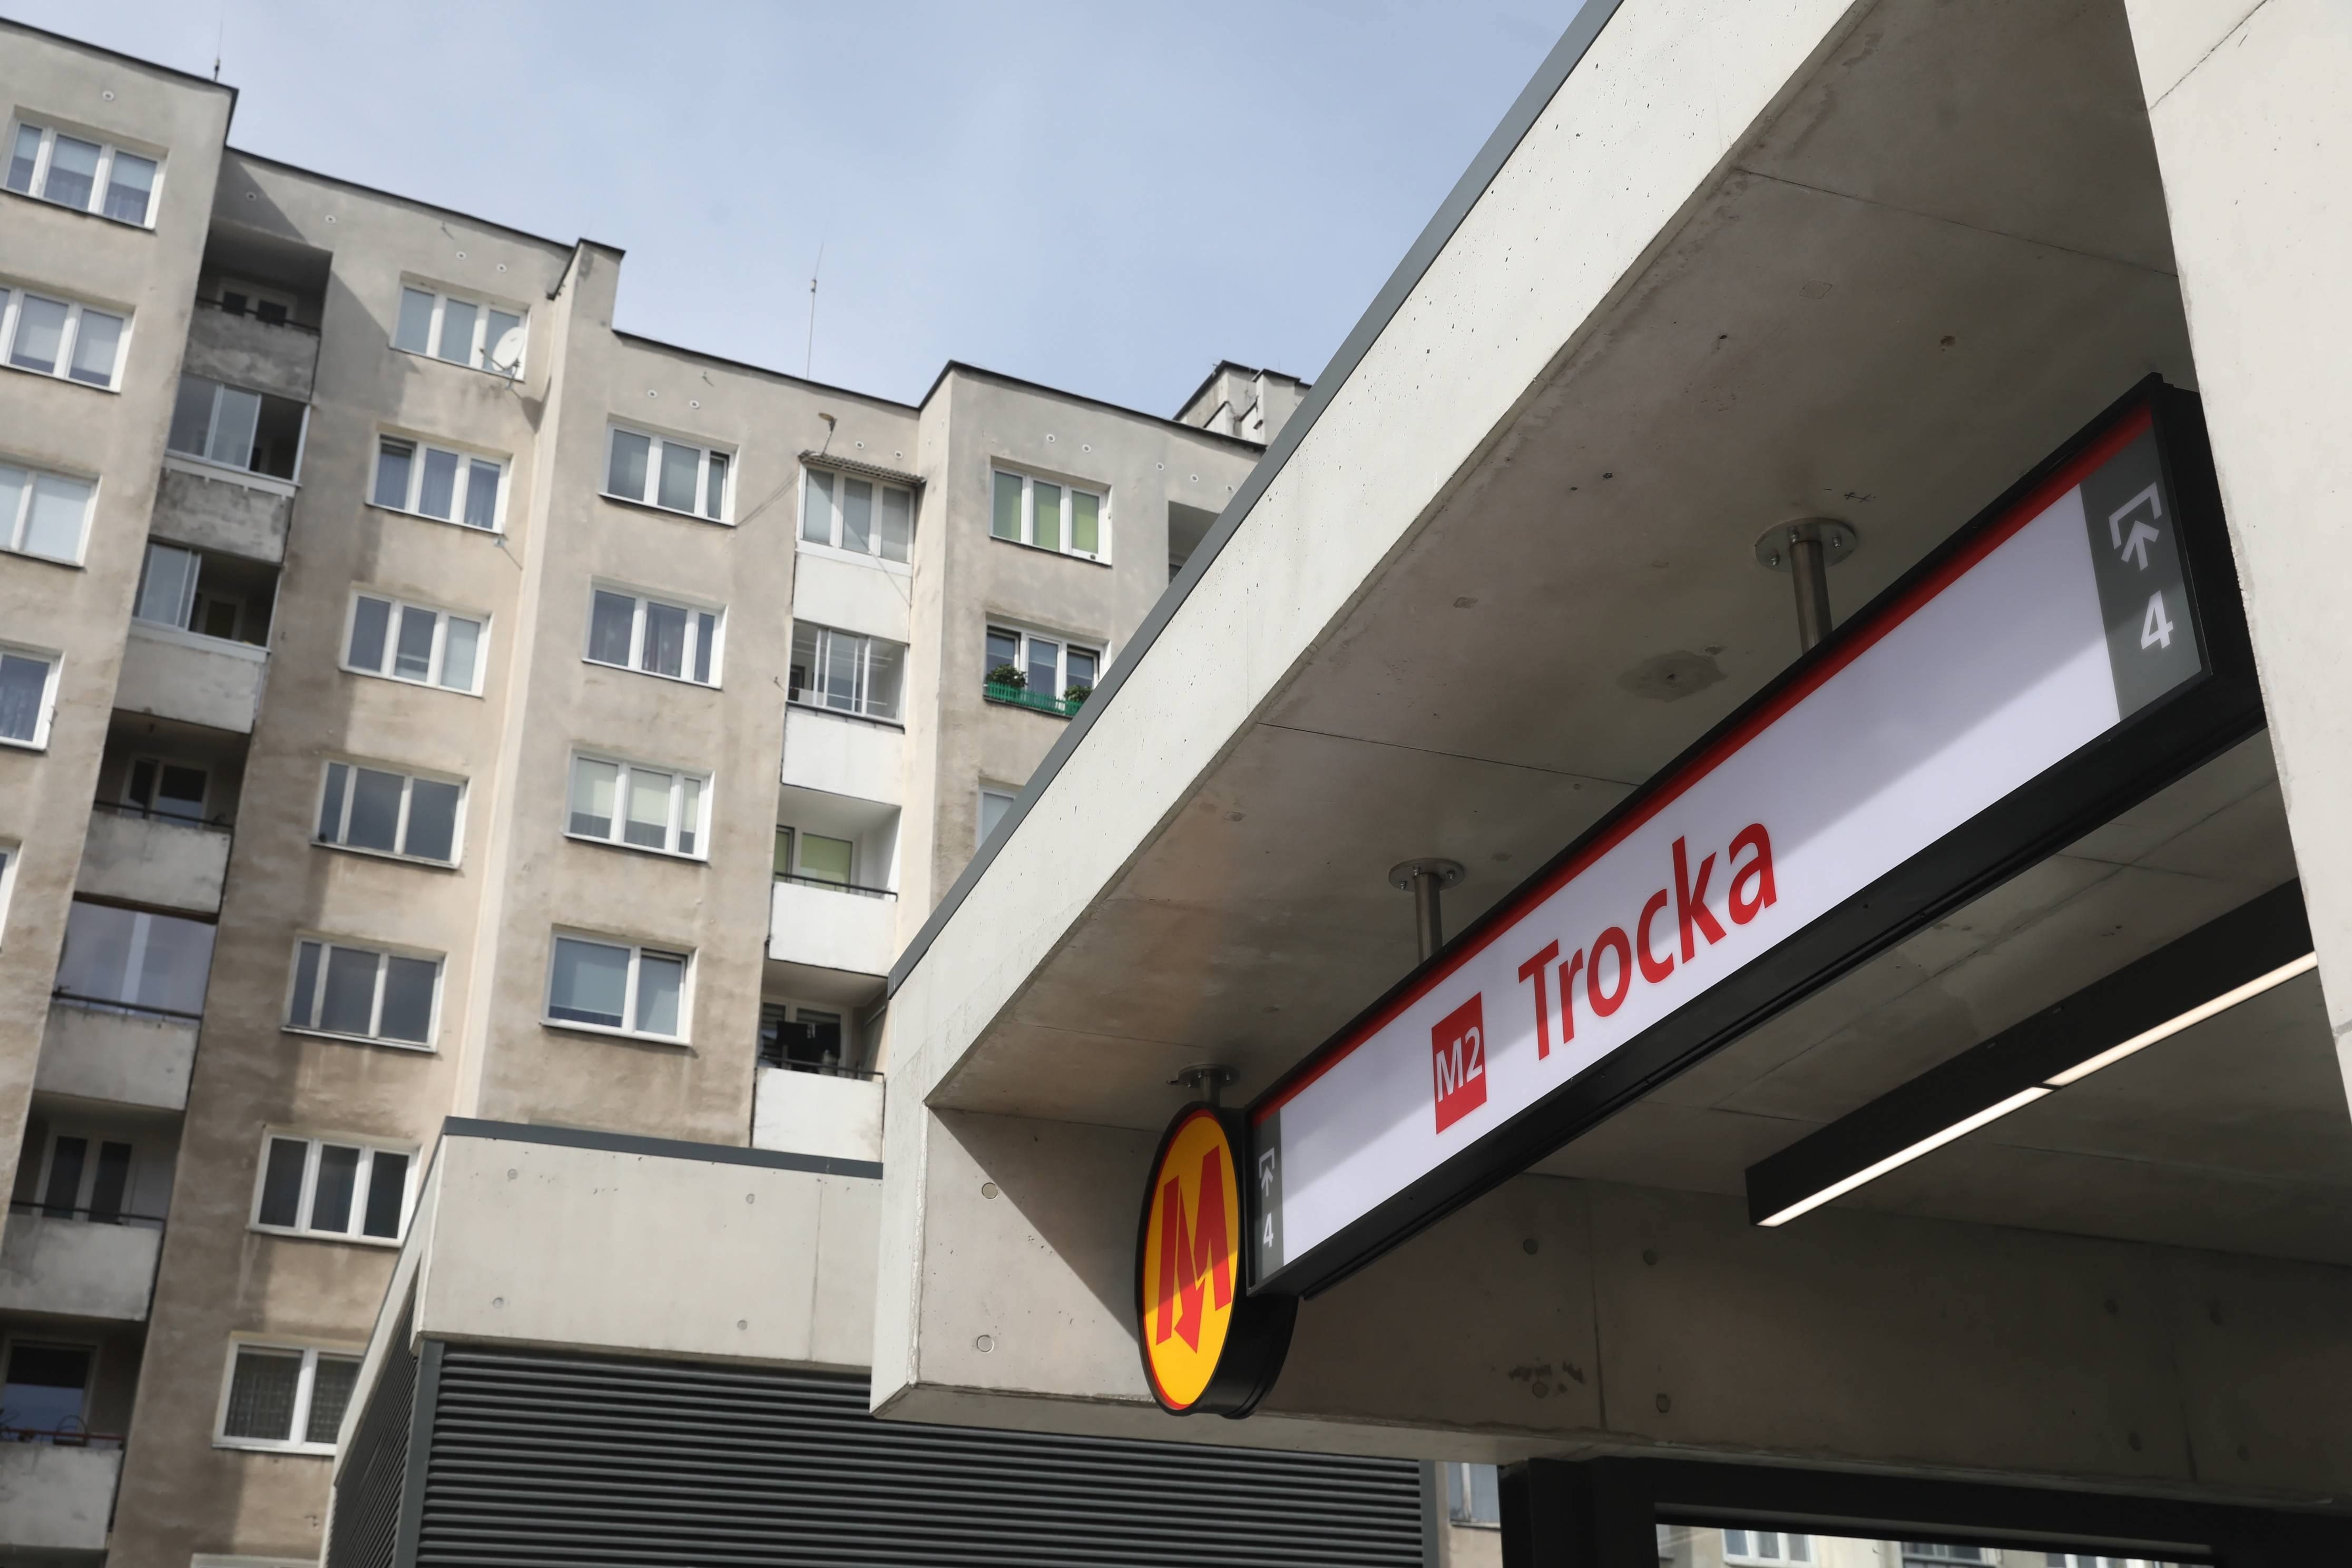 Stacja M2 TROCKA już otwarta